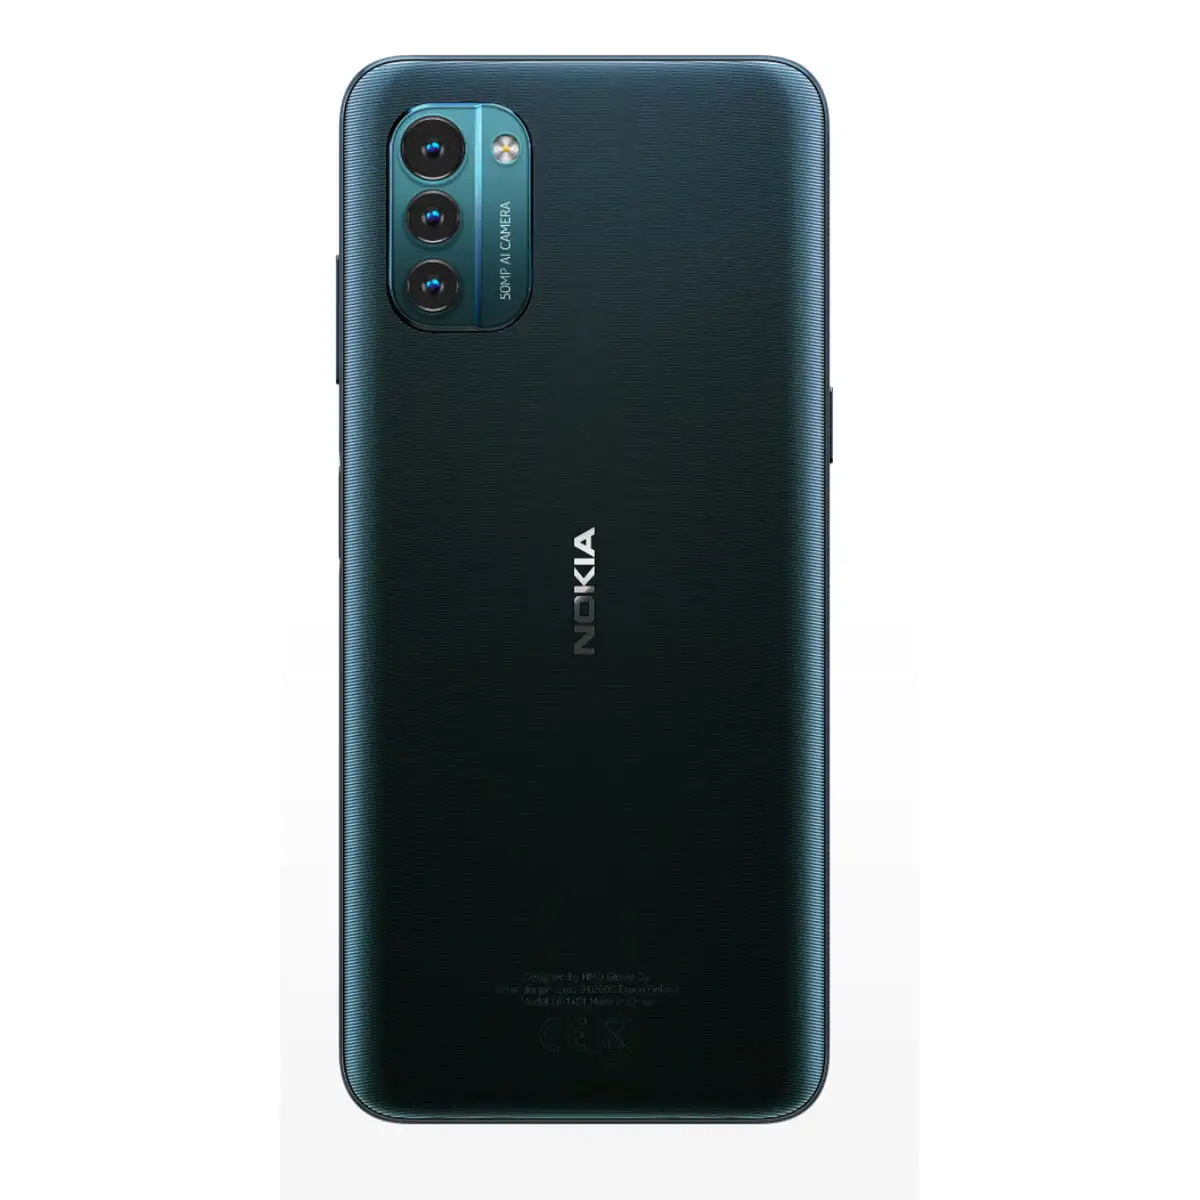 Smartphone nokia g21 bleu 4 gb ram unisoc 6 5 64 gb_9416. DIAYTAR SENEGAL - Où Chaque Produit a son Histoire. Découvrez notre gamme de produits, chacun portant en lui le récit de l'artisanat et de la passion, pour vous offrir une expérience de shopping authentique.